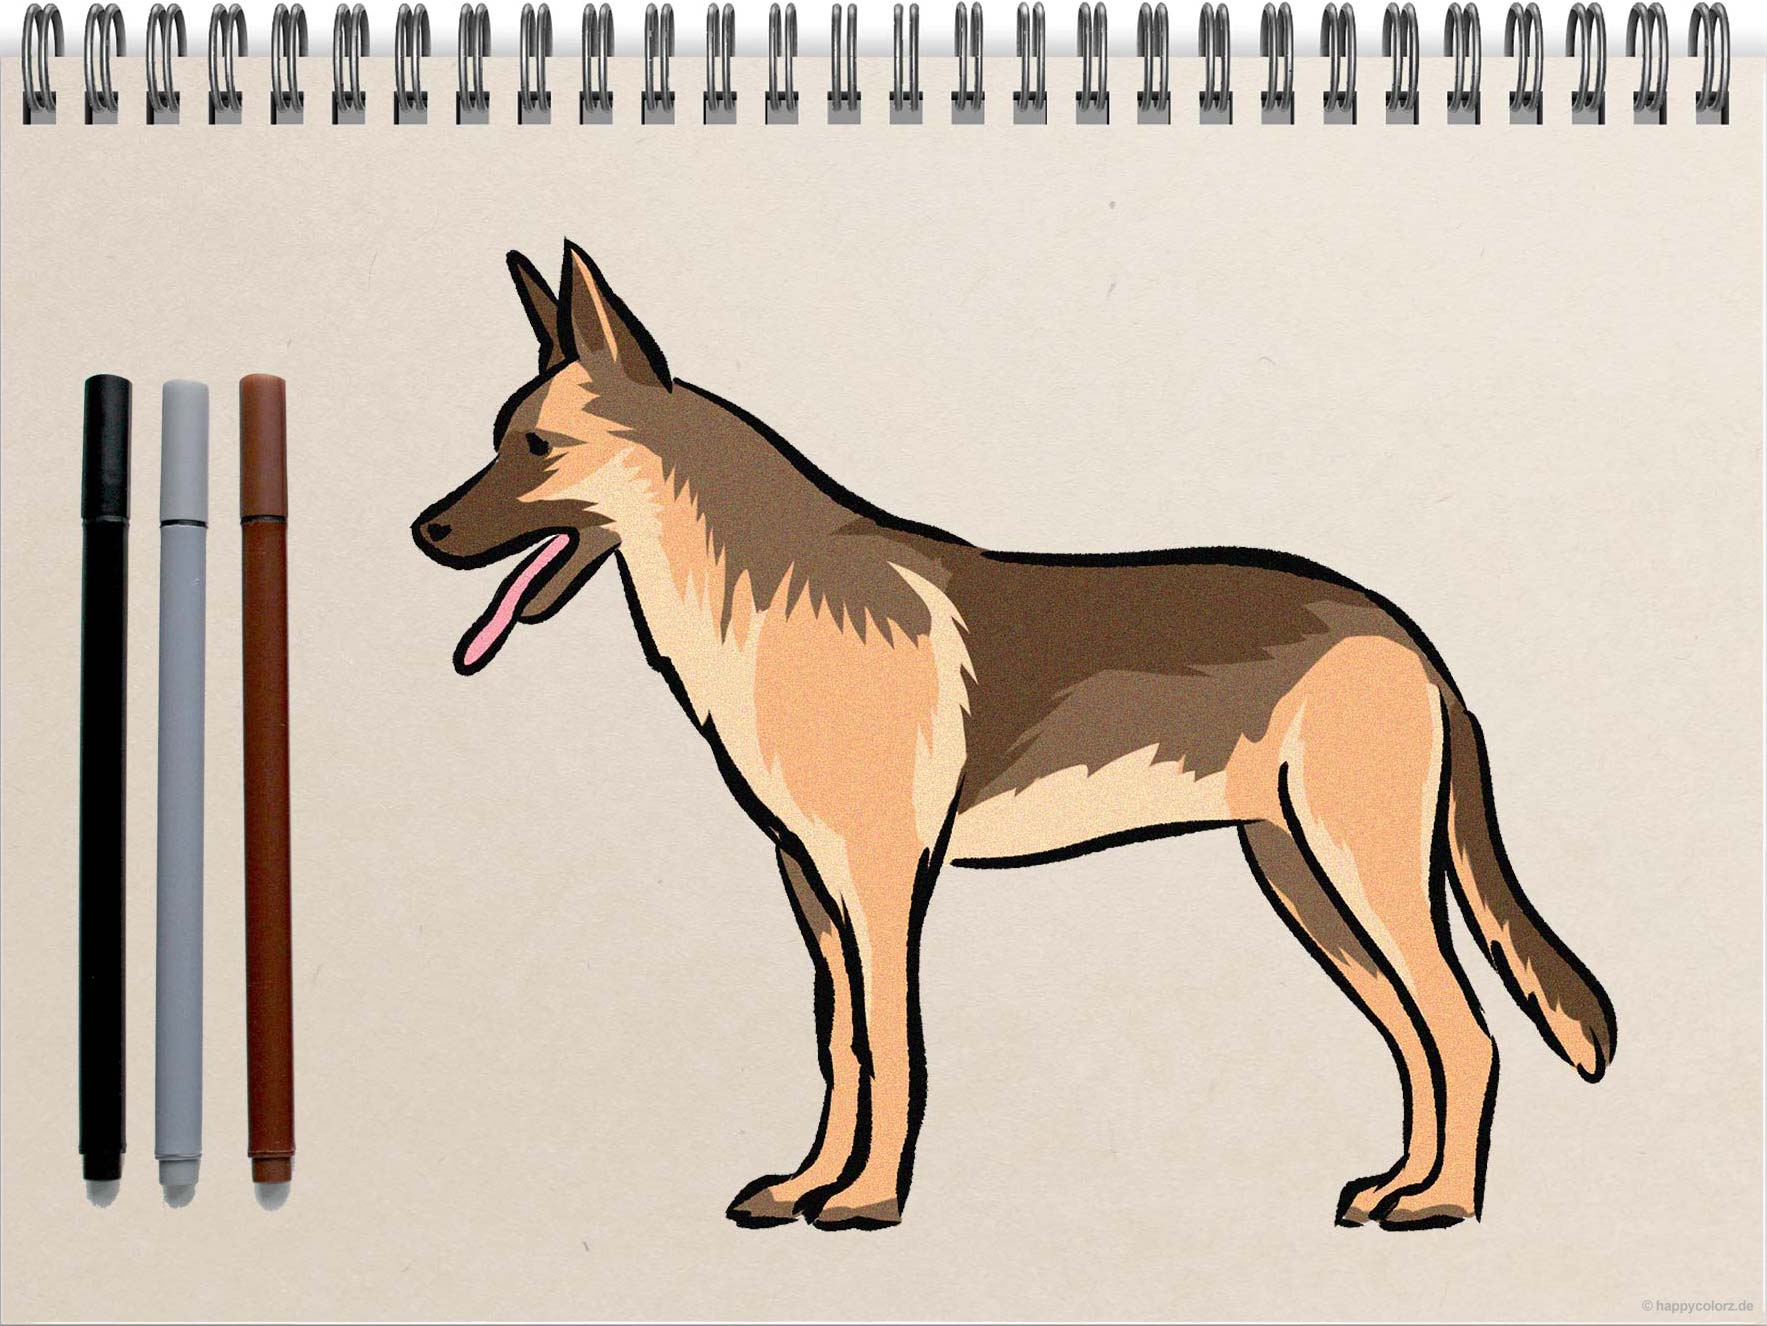 Hund zeichnen - Schritt-für-Schritt Anleitung mit Vorlagen